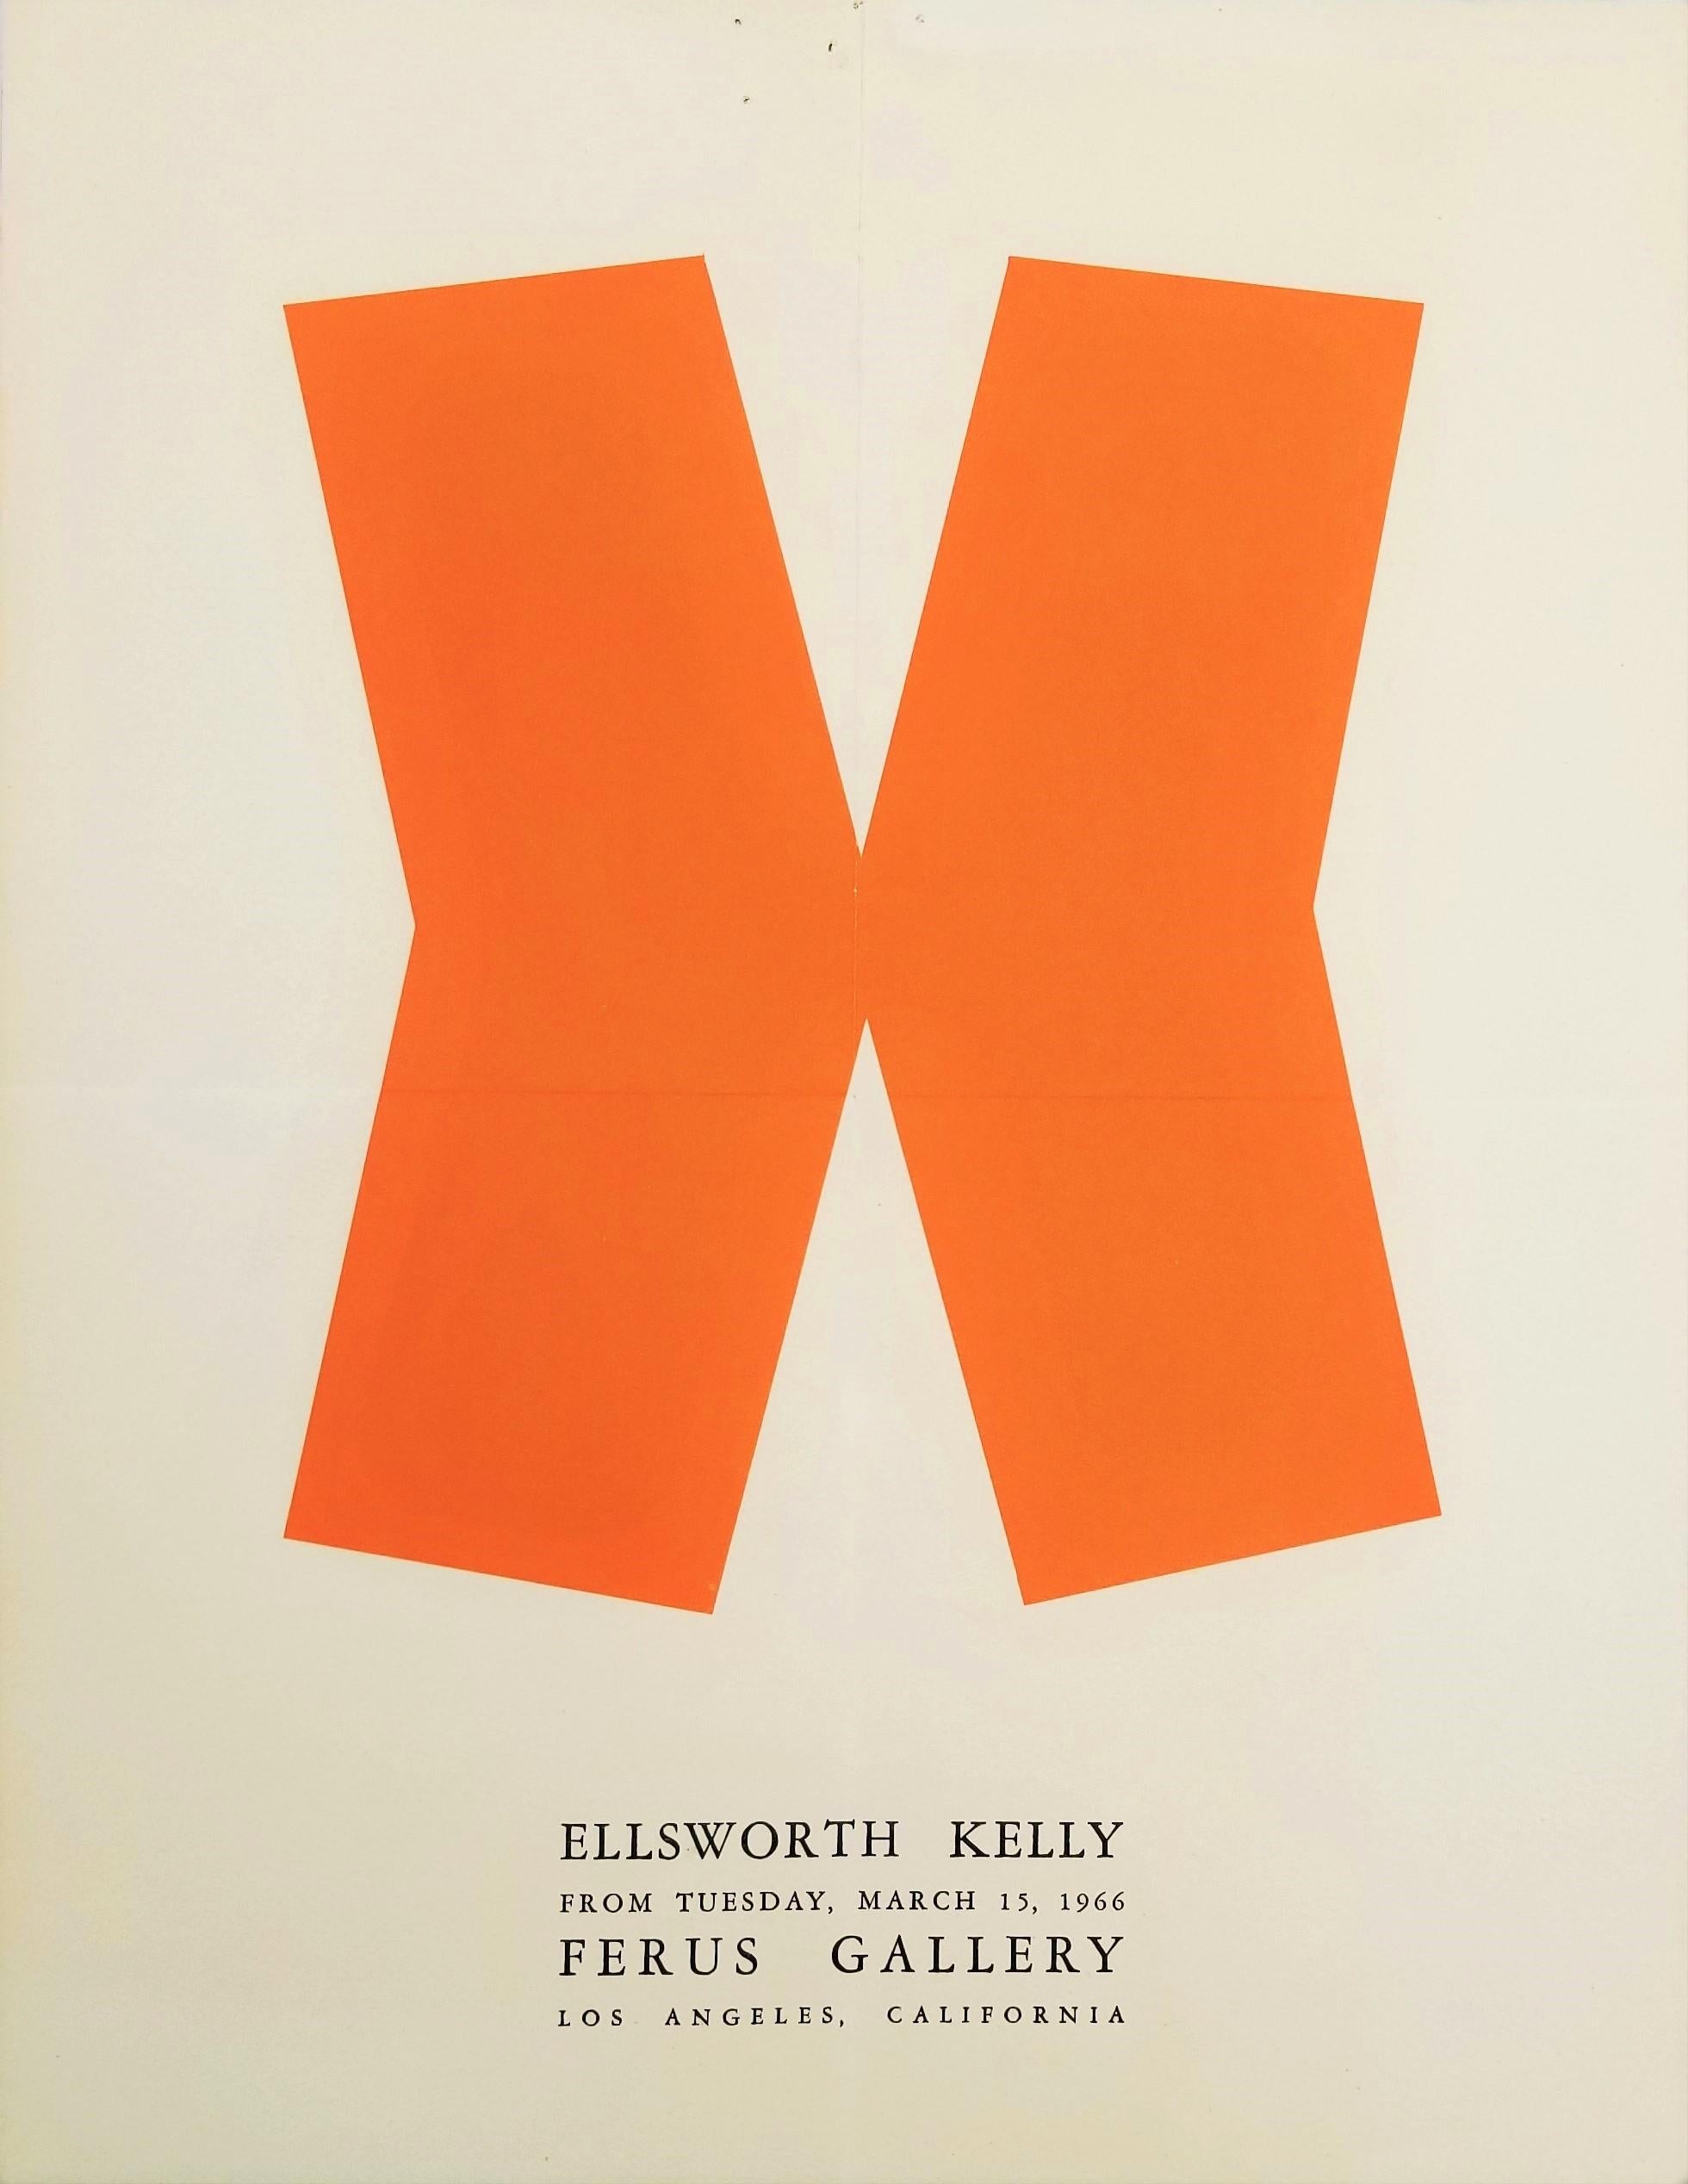 Künstler: (nach) Ellsworth Kelly (Amerikaner, 1923-2015)
Titel: "Ellsworth Kelly: Ferus Gallery (Gate)"
Jahr: 1966
Medium: Original Lithographie, Ausstellungsplakat auf cremefarbenem Velinpapier
Limitierte Auflage: Unbekannt
Drucker: